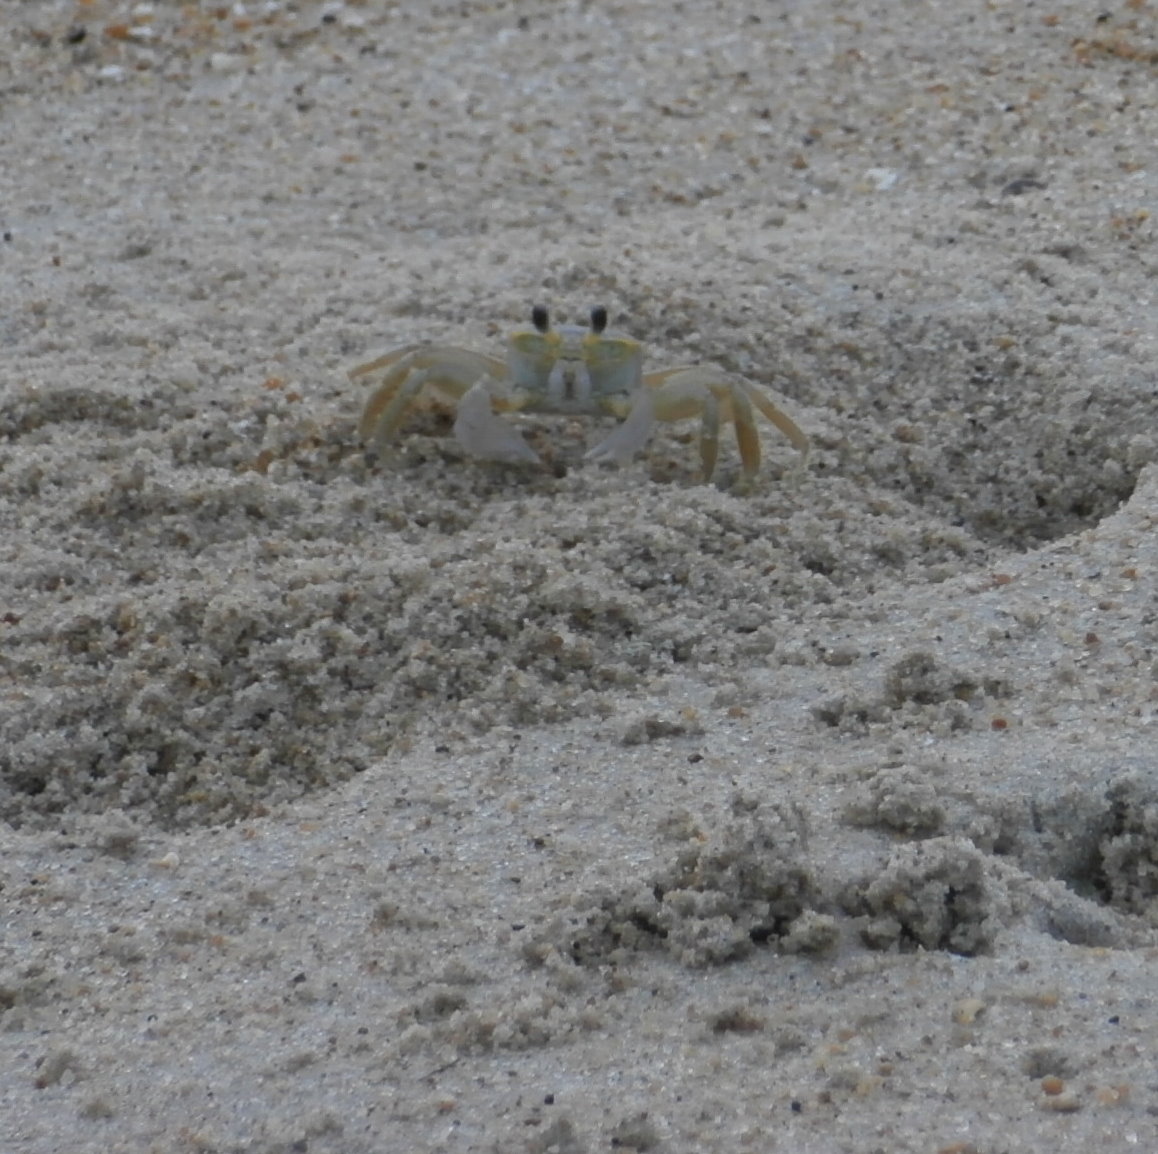 Sand Crab - Beach, Outer Banks, North Carolina